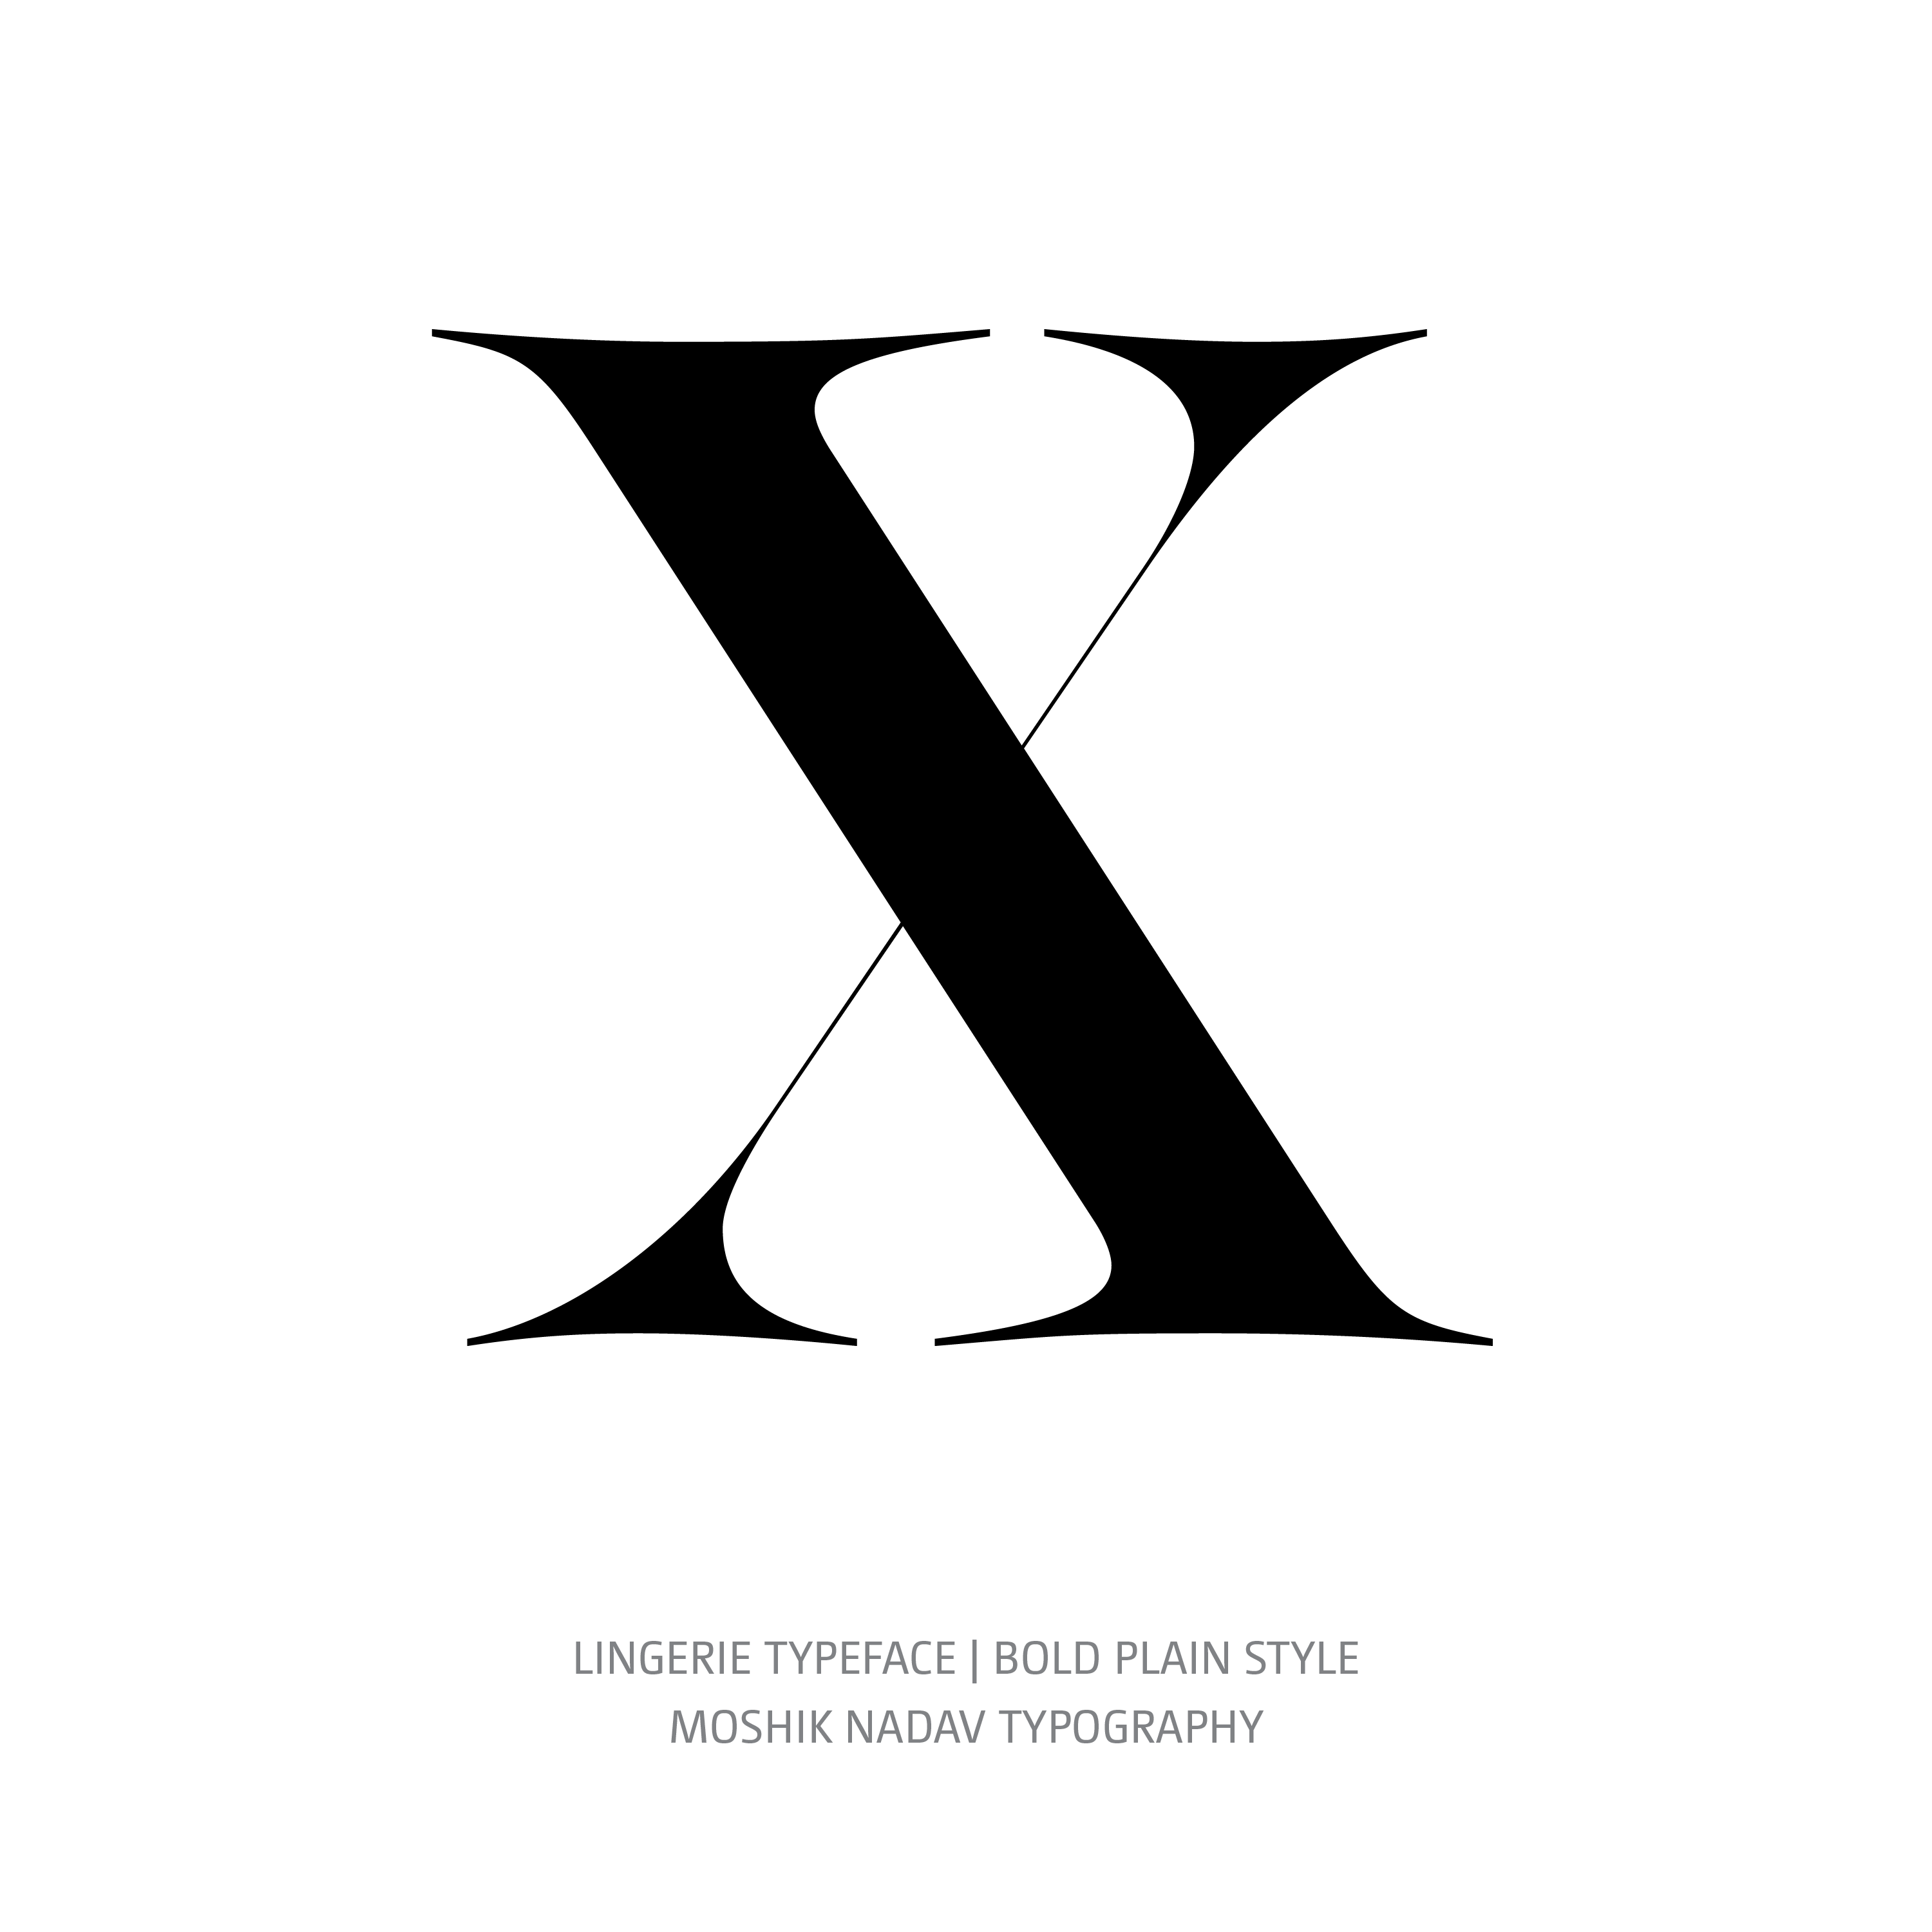 Lingerie Typeface Bold Plain X